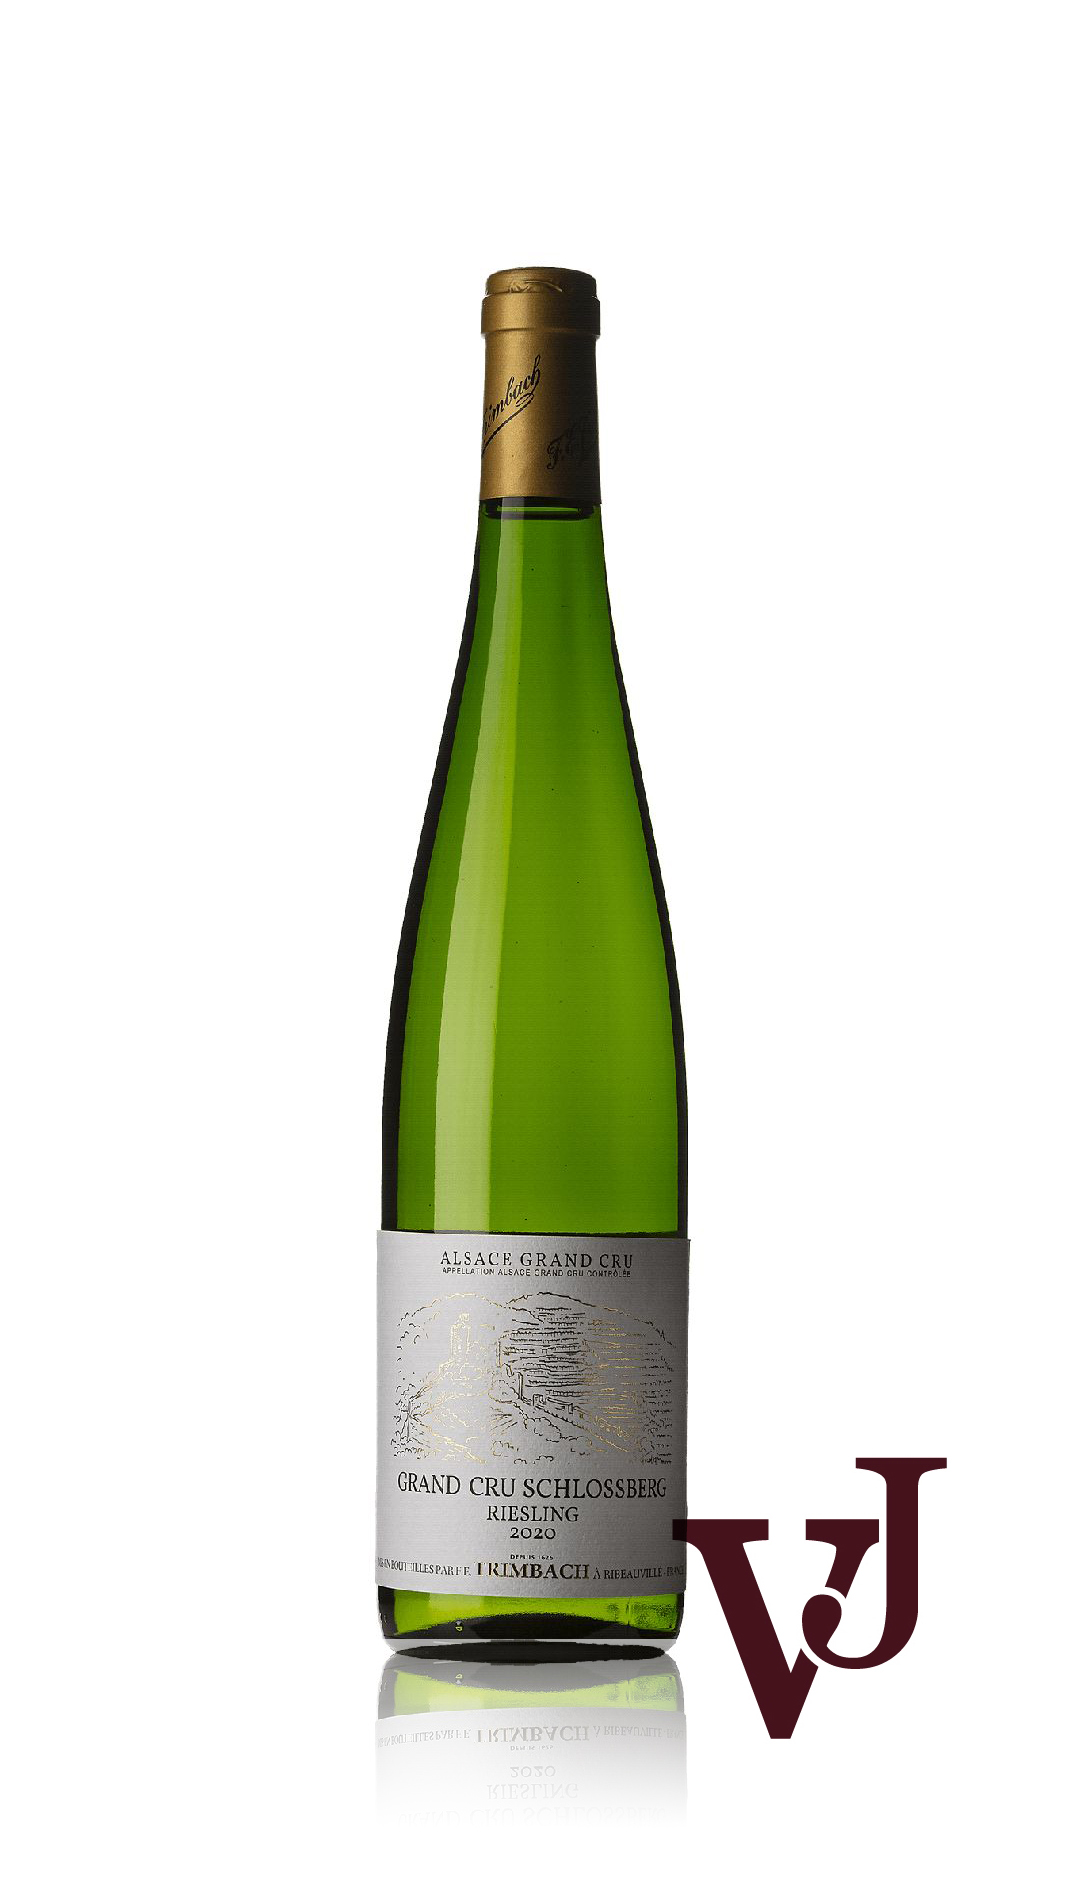 Vitt Vin - Trimbach Riesling Grand Cru Schlossberg 2020 artikel nummer 9128201 från producenten Trimbach från området Frankrike